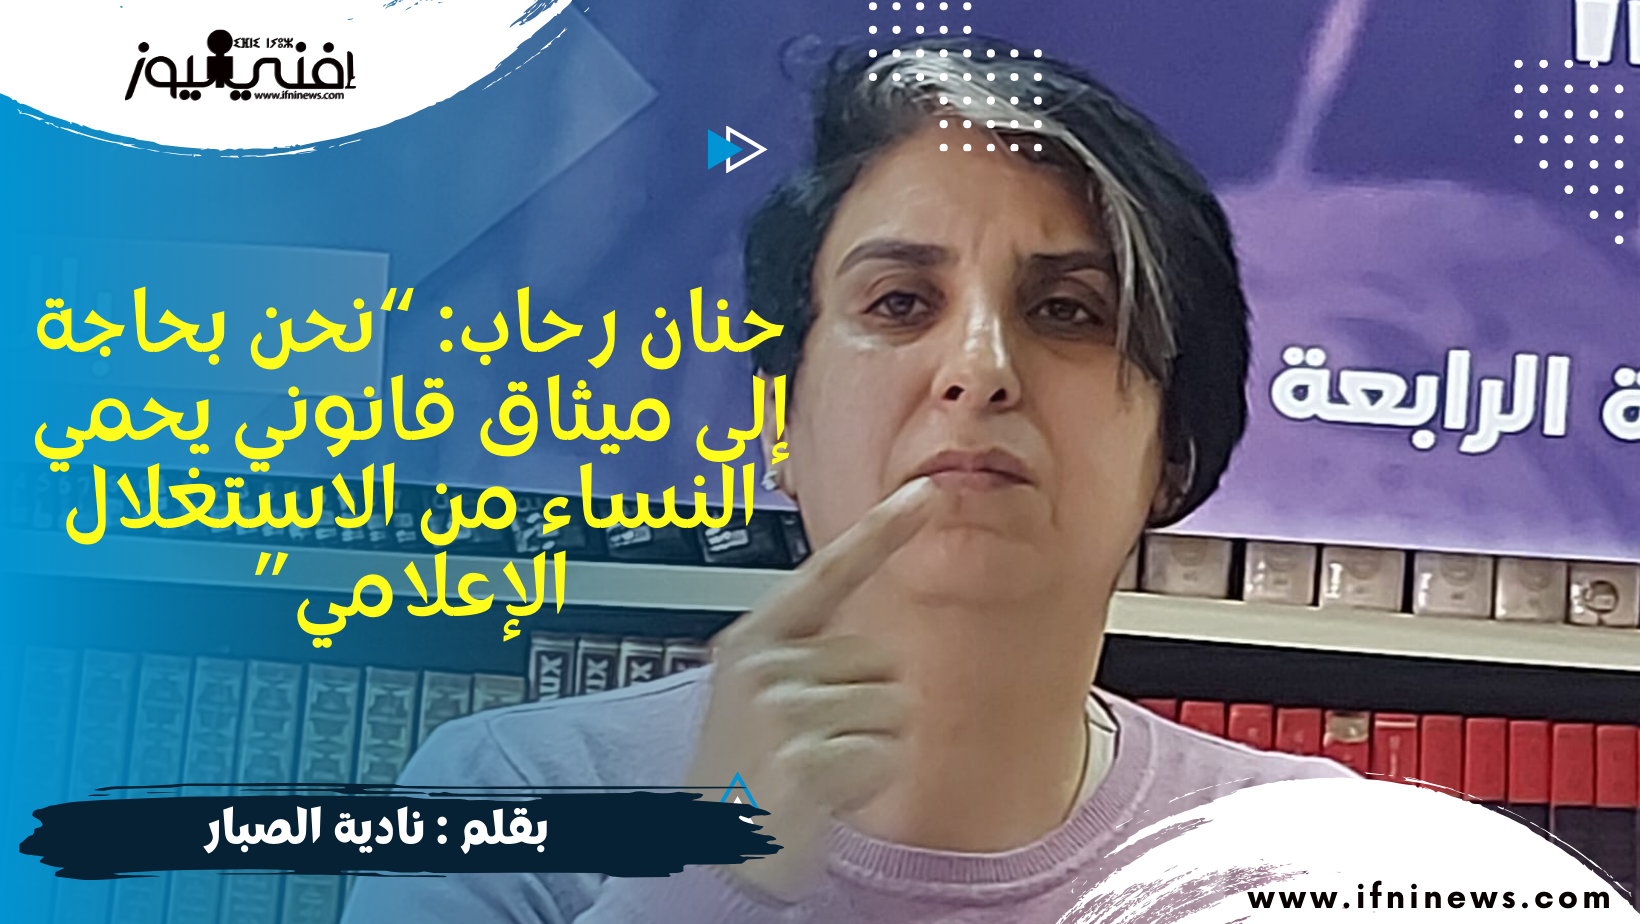 حنان رحاب: “نحن بحاجة إلى ميثاق قانوني يحمي النساء من الاستغلال الإعلامي” بقلم نادية الصبار